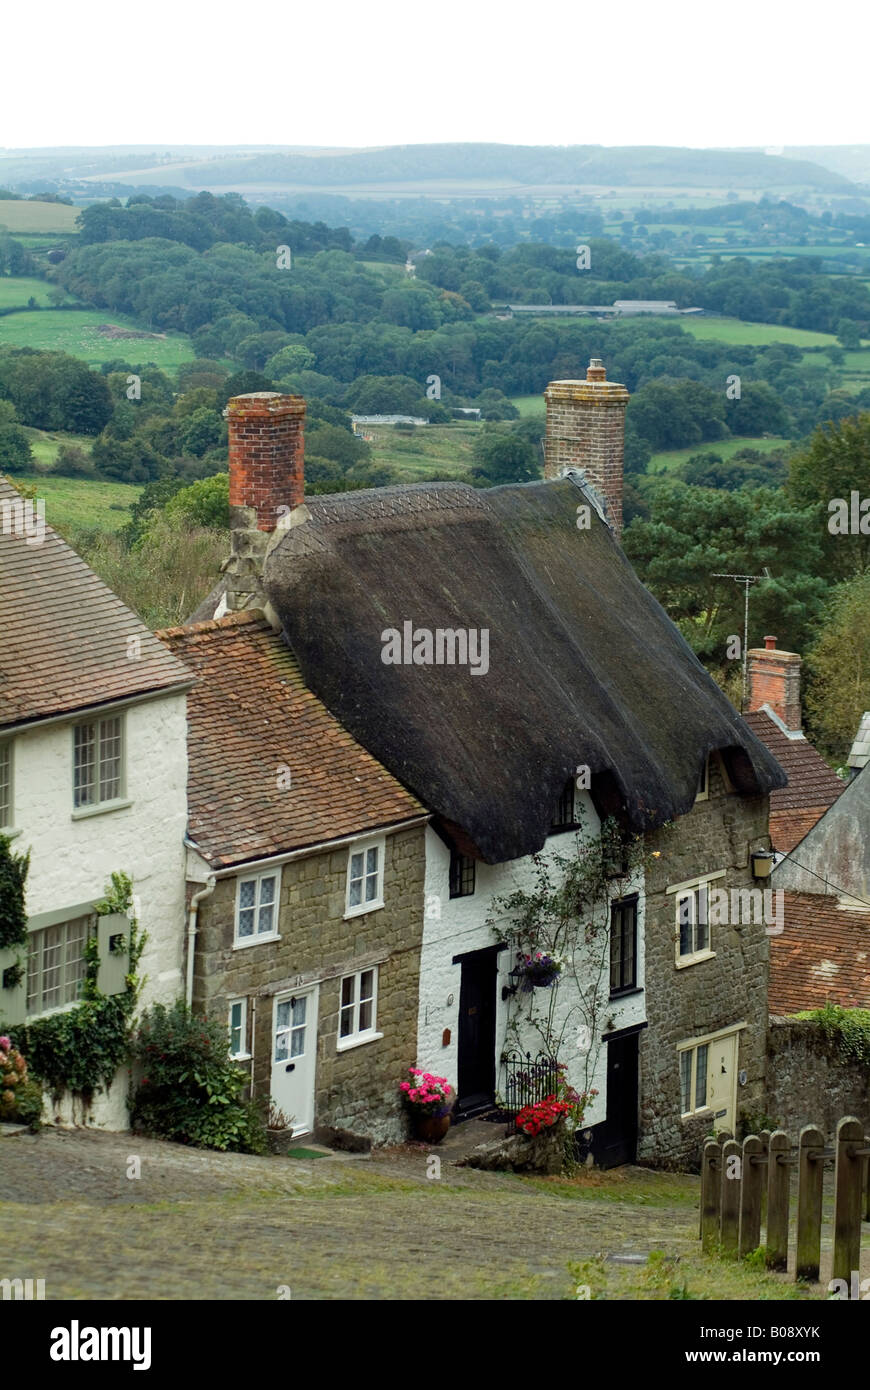 Reet und Ziegel überdachte Hütten in Gold Hill, englische Landschaft, Shaftesbury, Dorset, England, UK Stockfoto